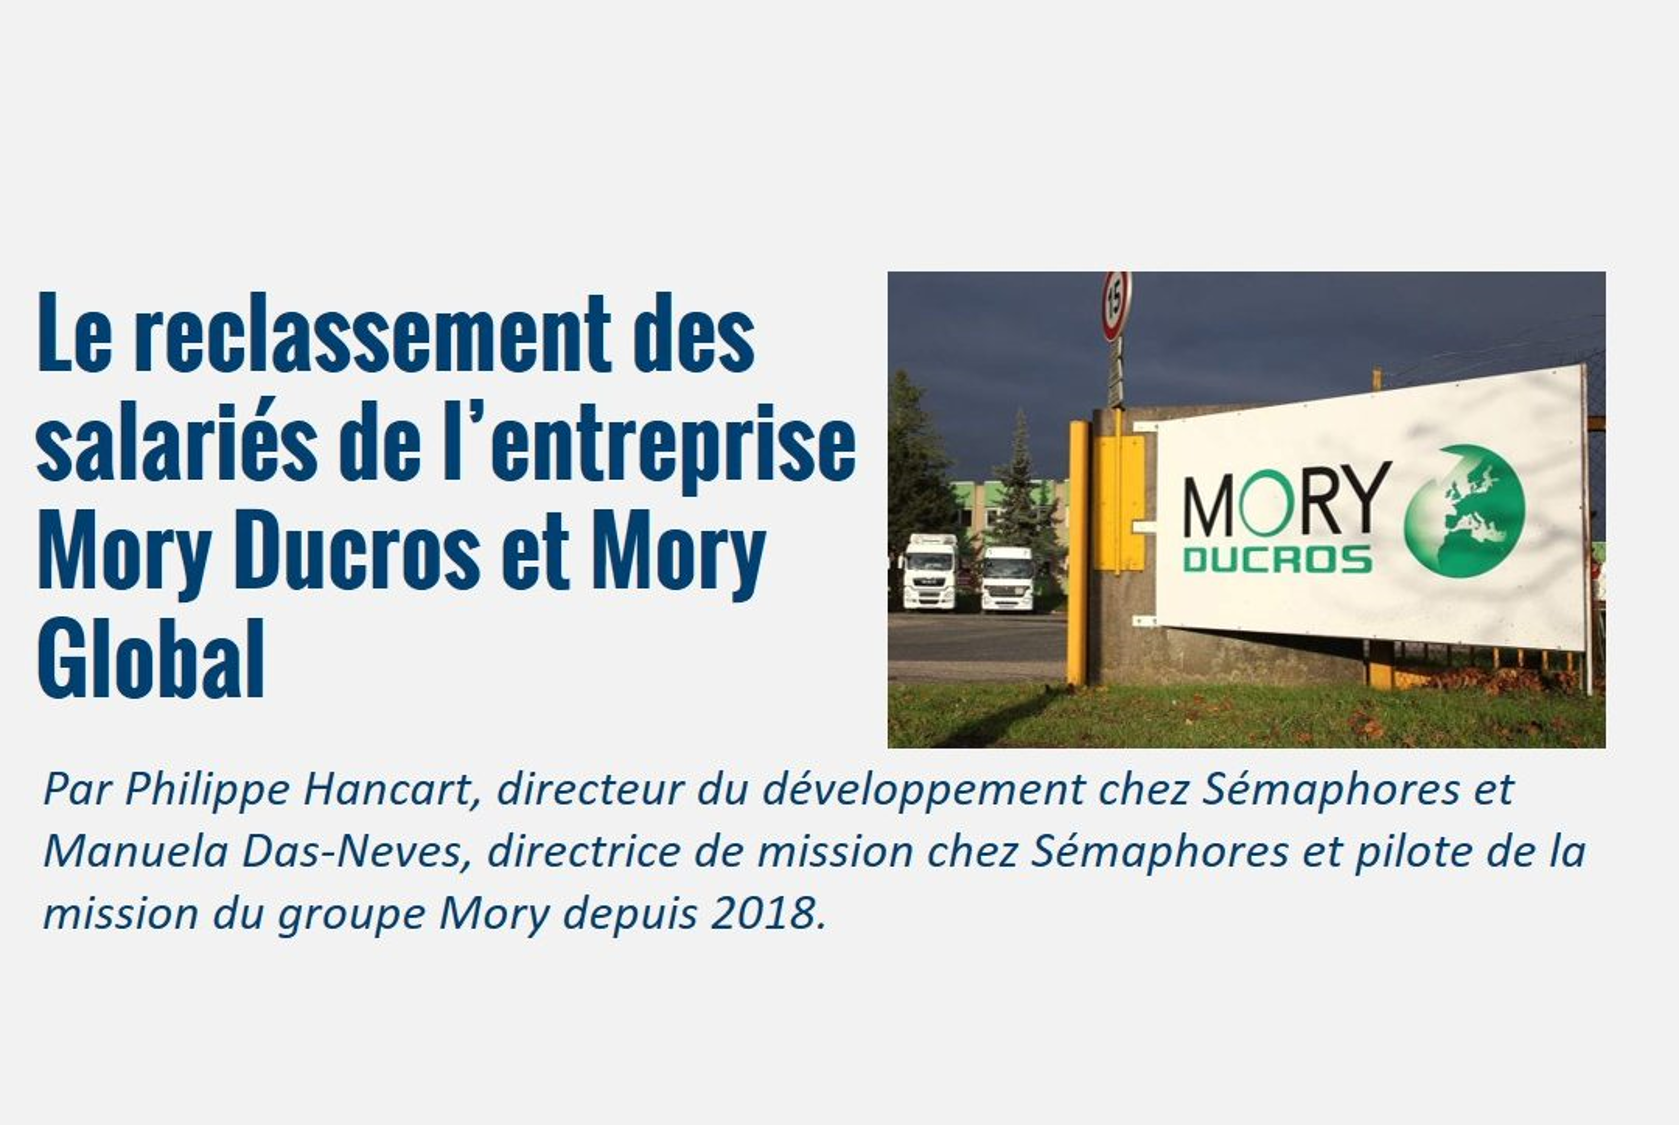 Le reclassement des salariés de l’entreprise Mory Ducros et Mory Global